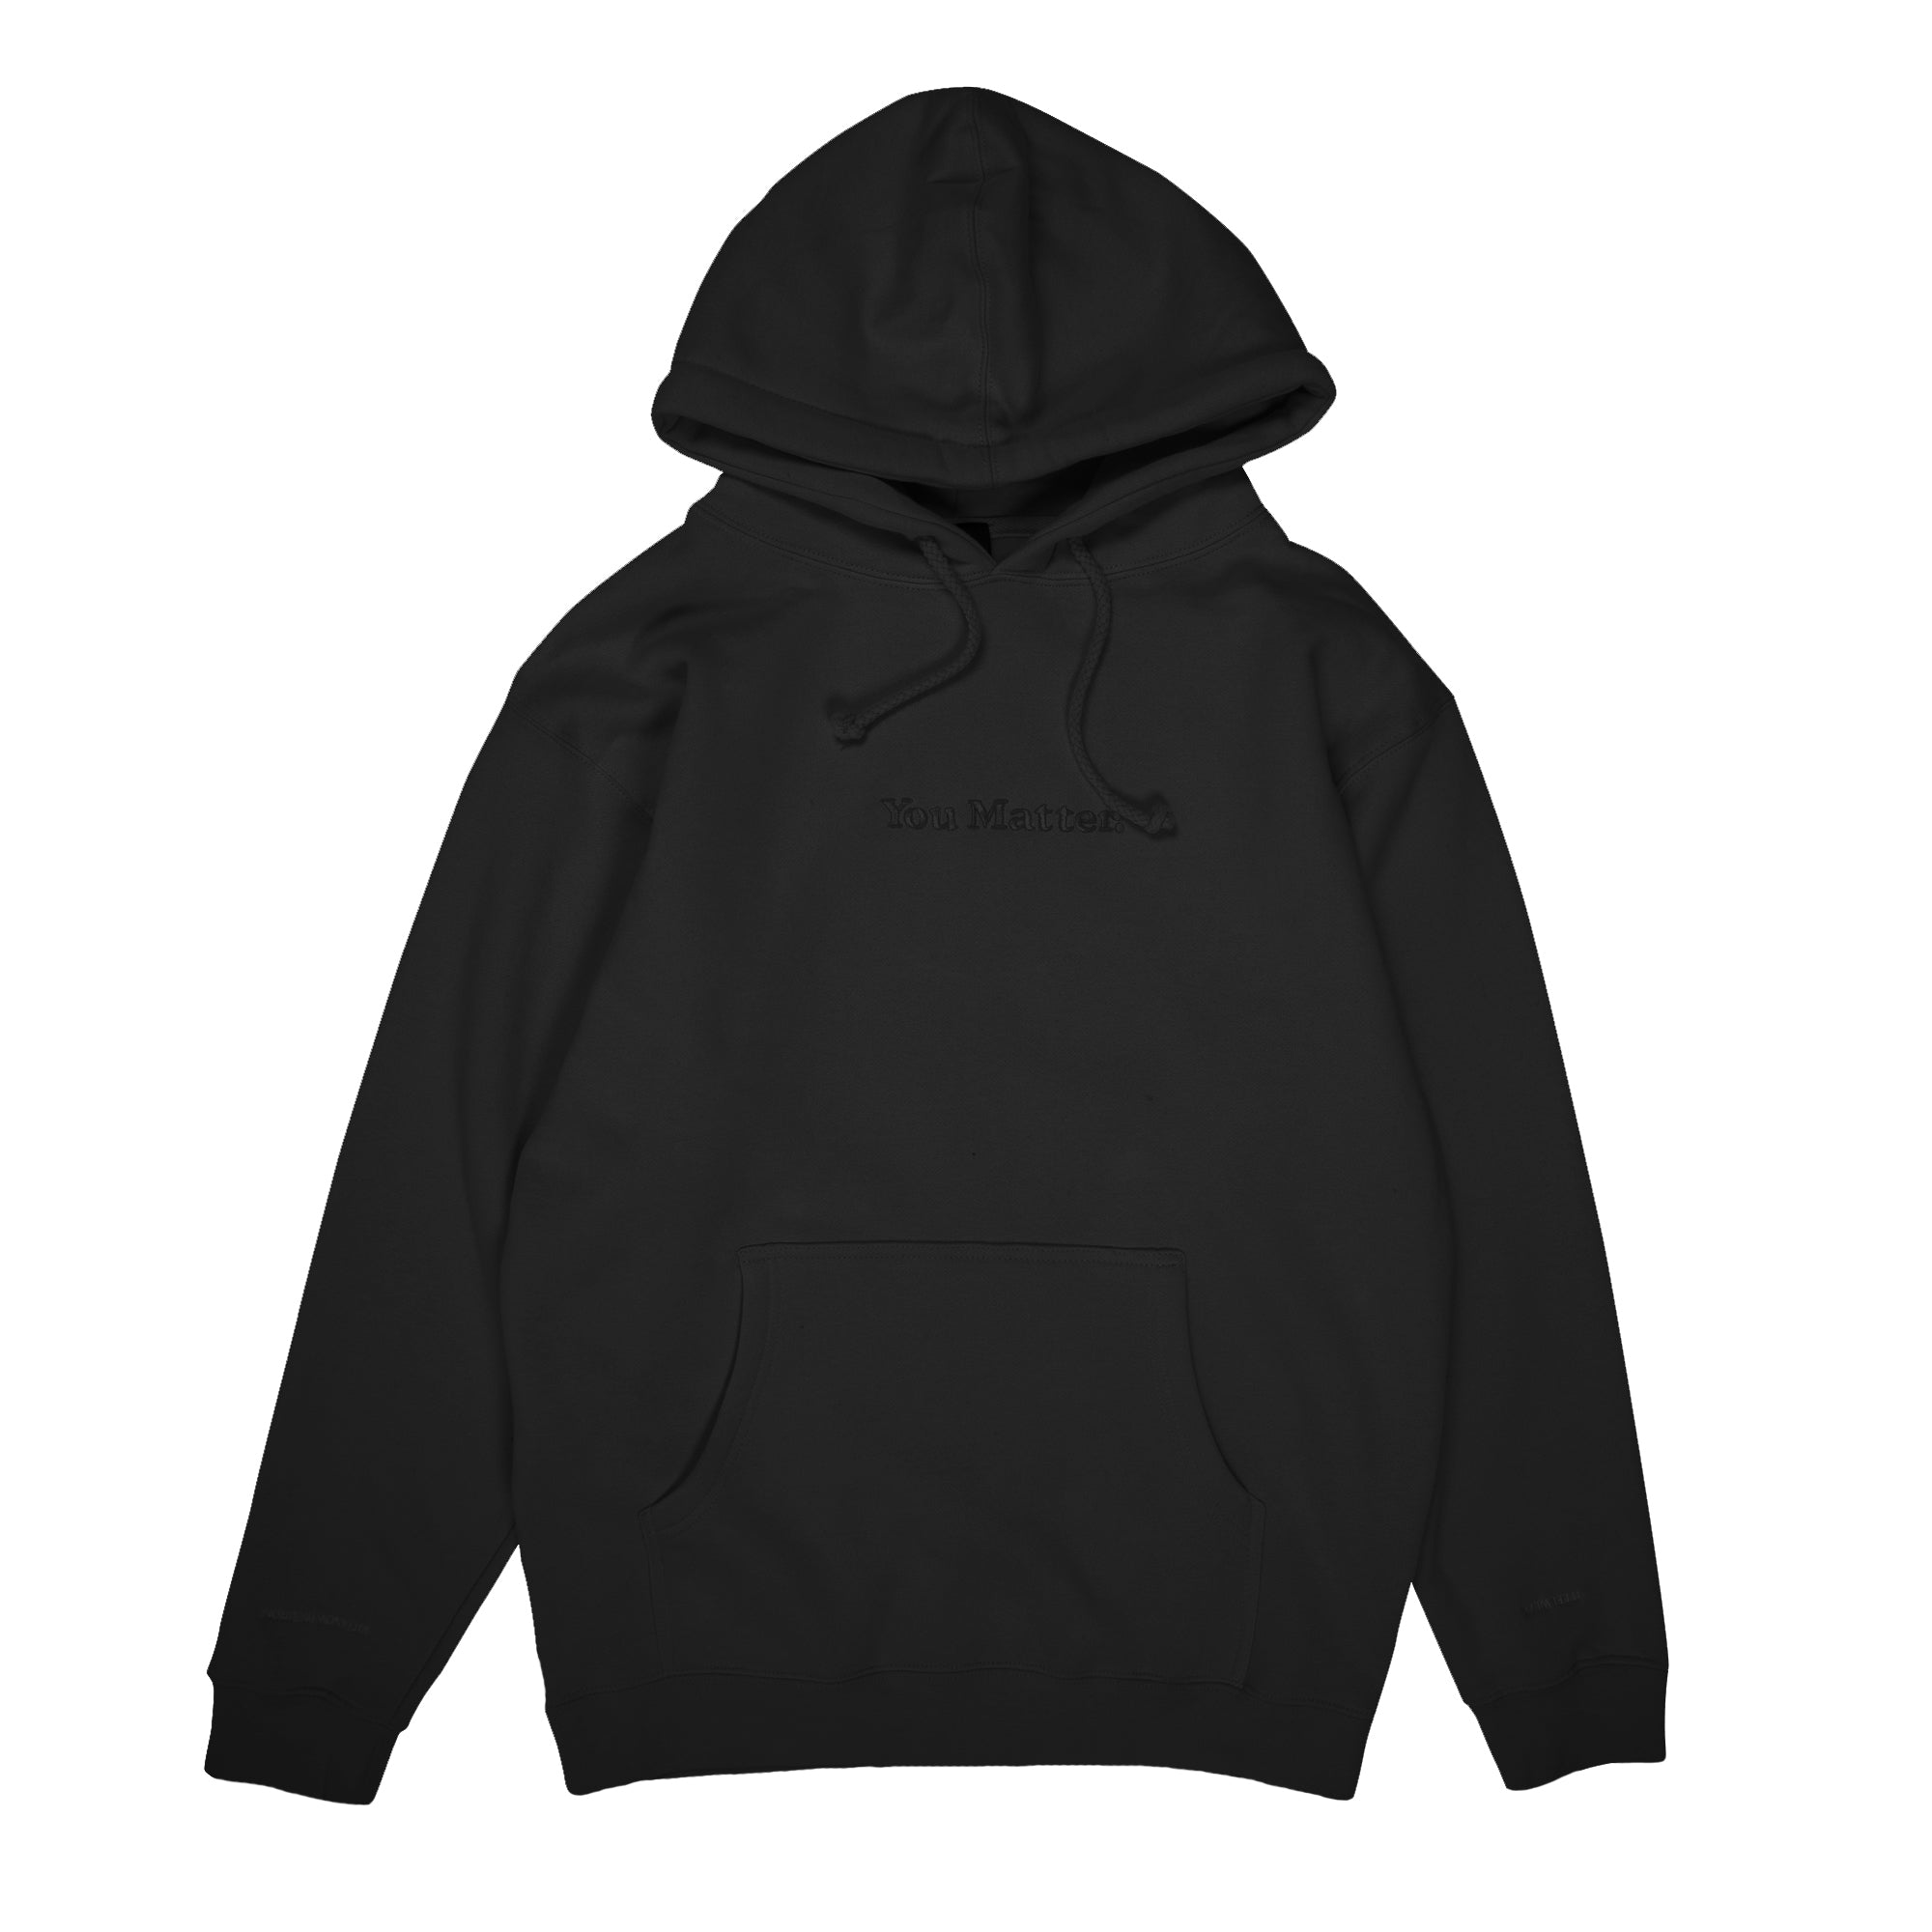 all black hoodies